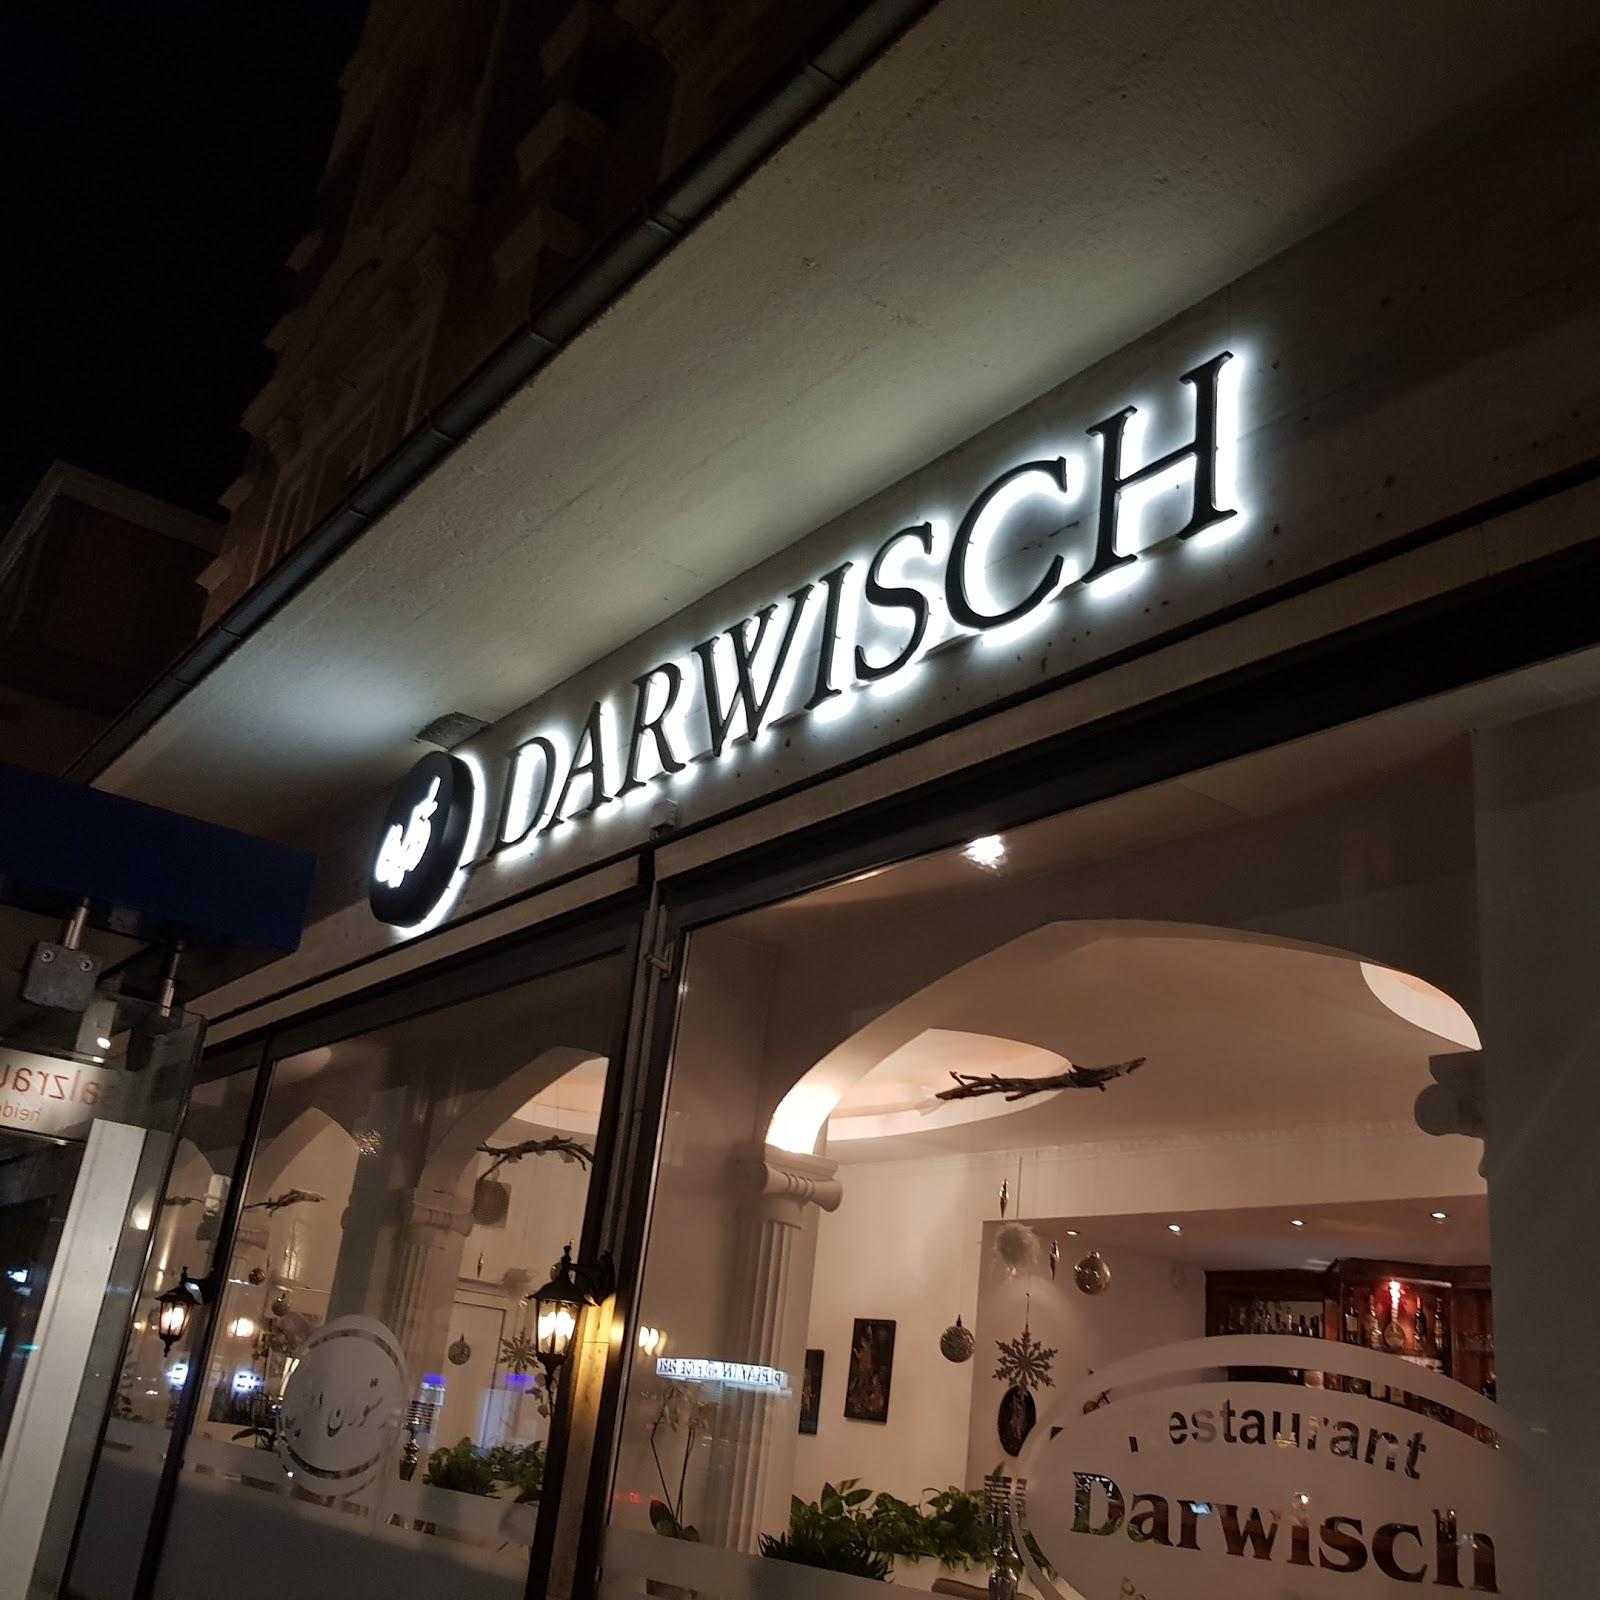 Restaurant "Darwisch" in Heidelberg